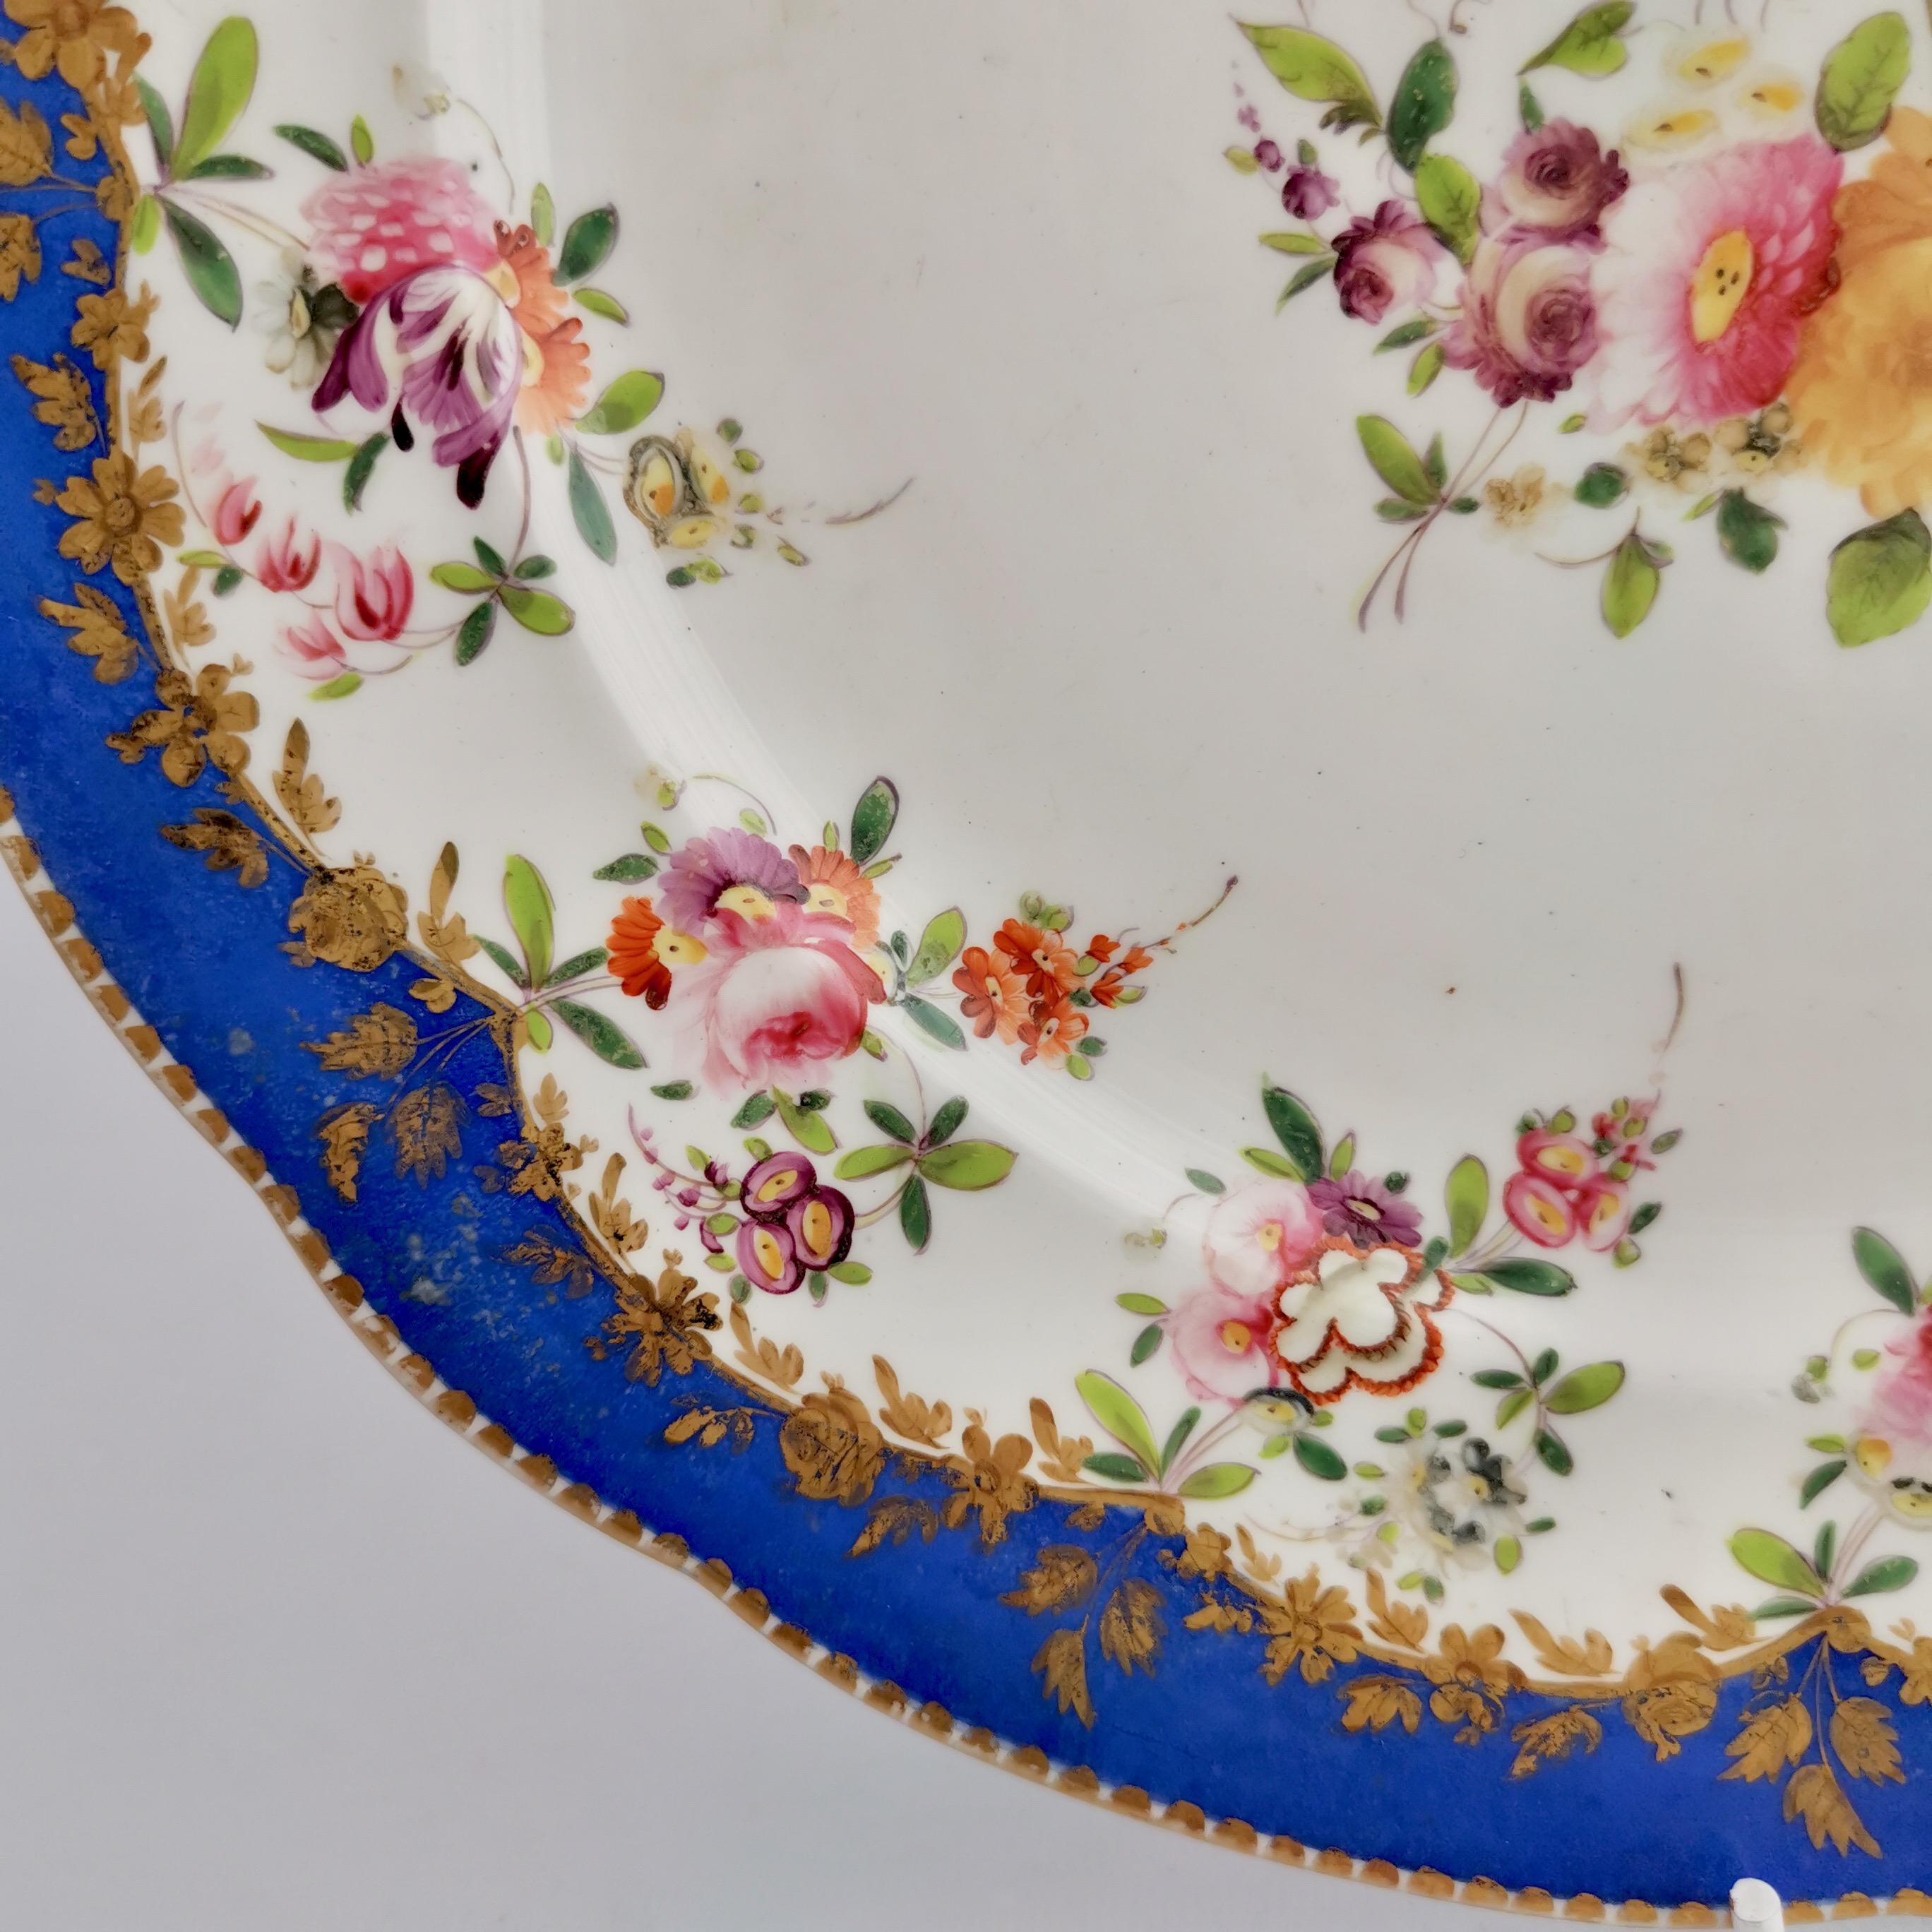 Coalport Porcelain Plate, Royal Blue with Flower Garlands, 1820-1825 1